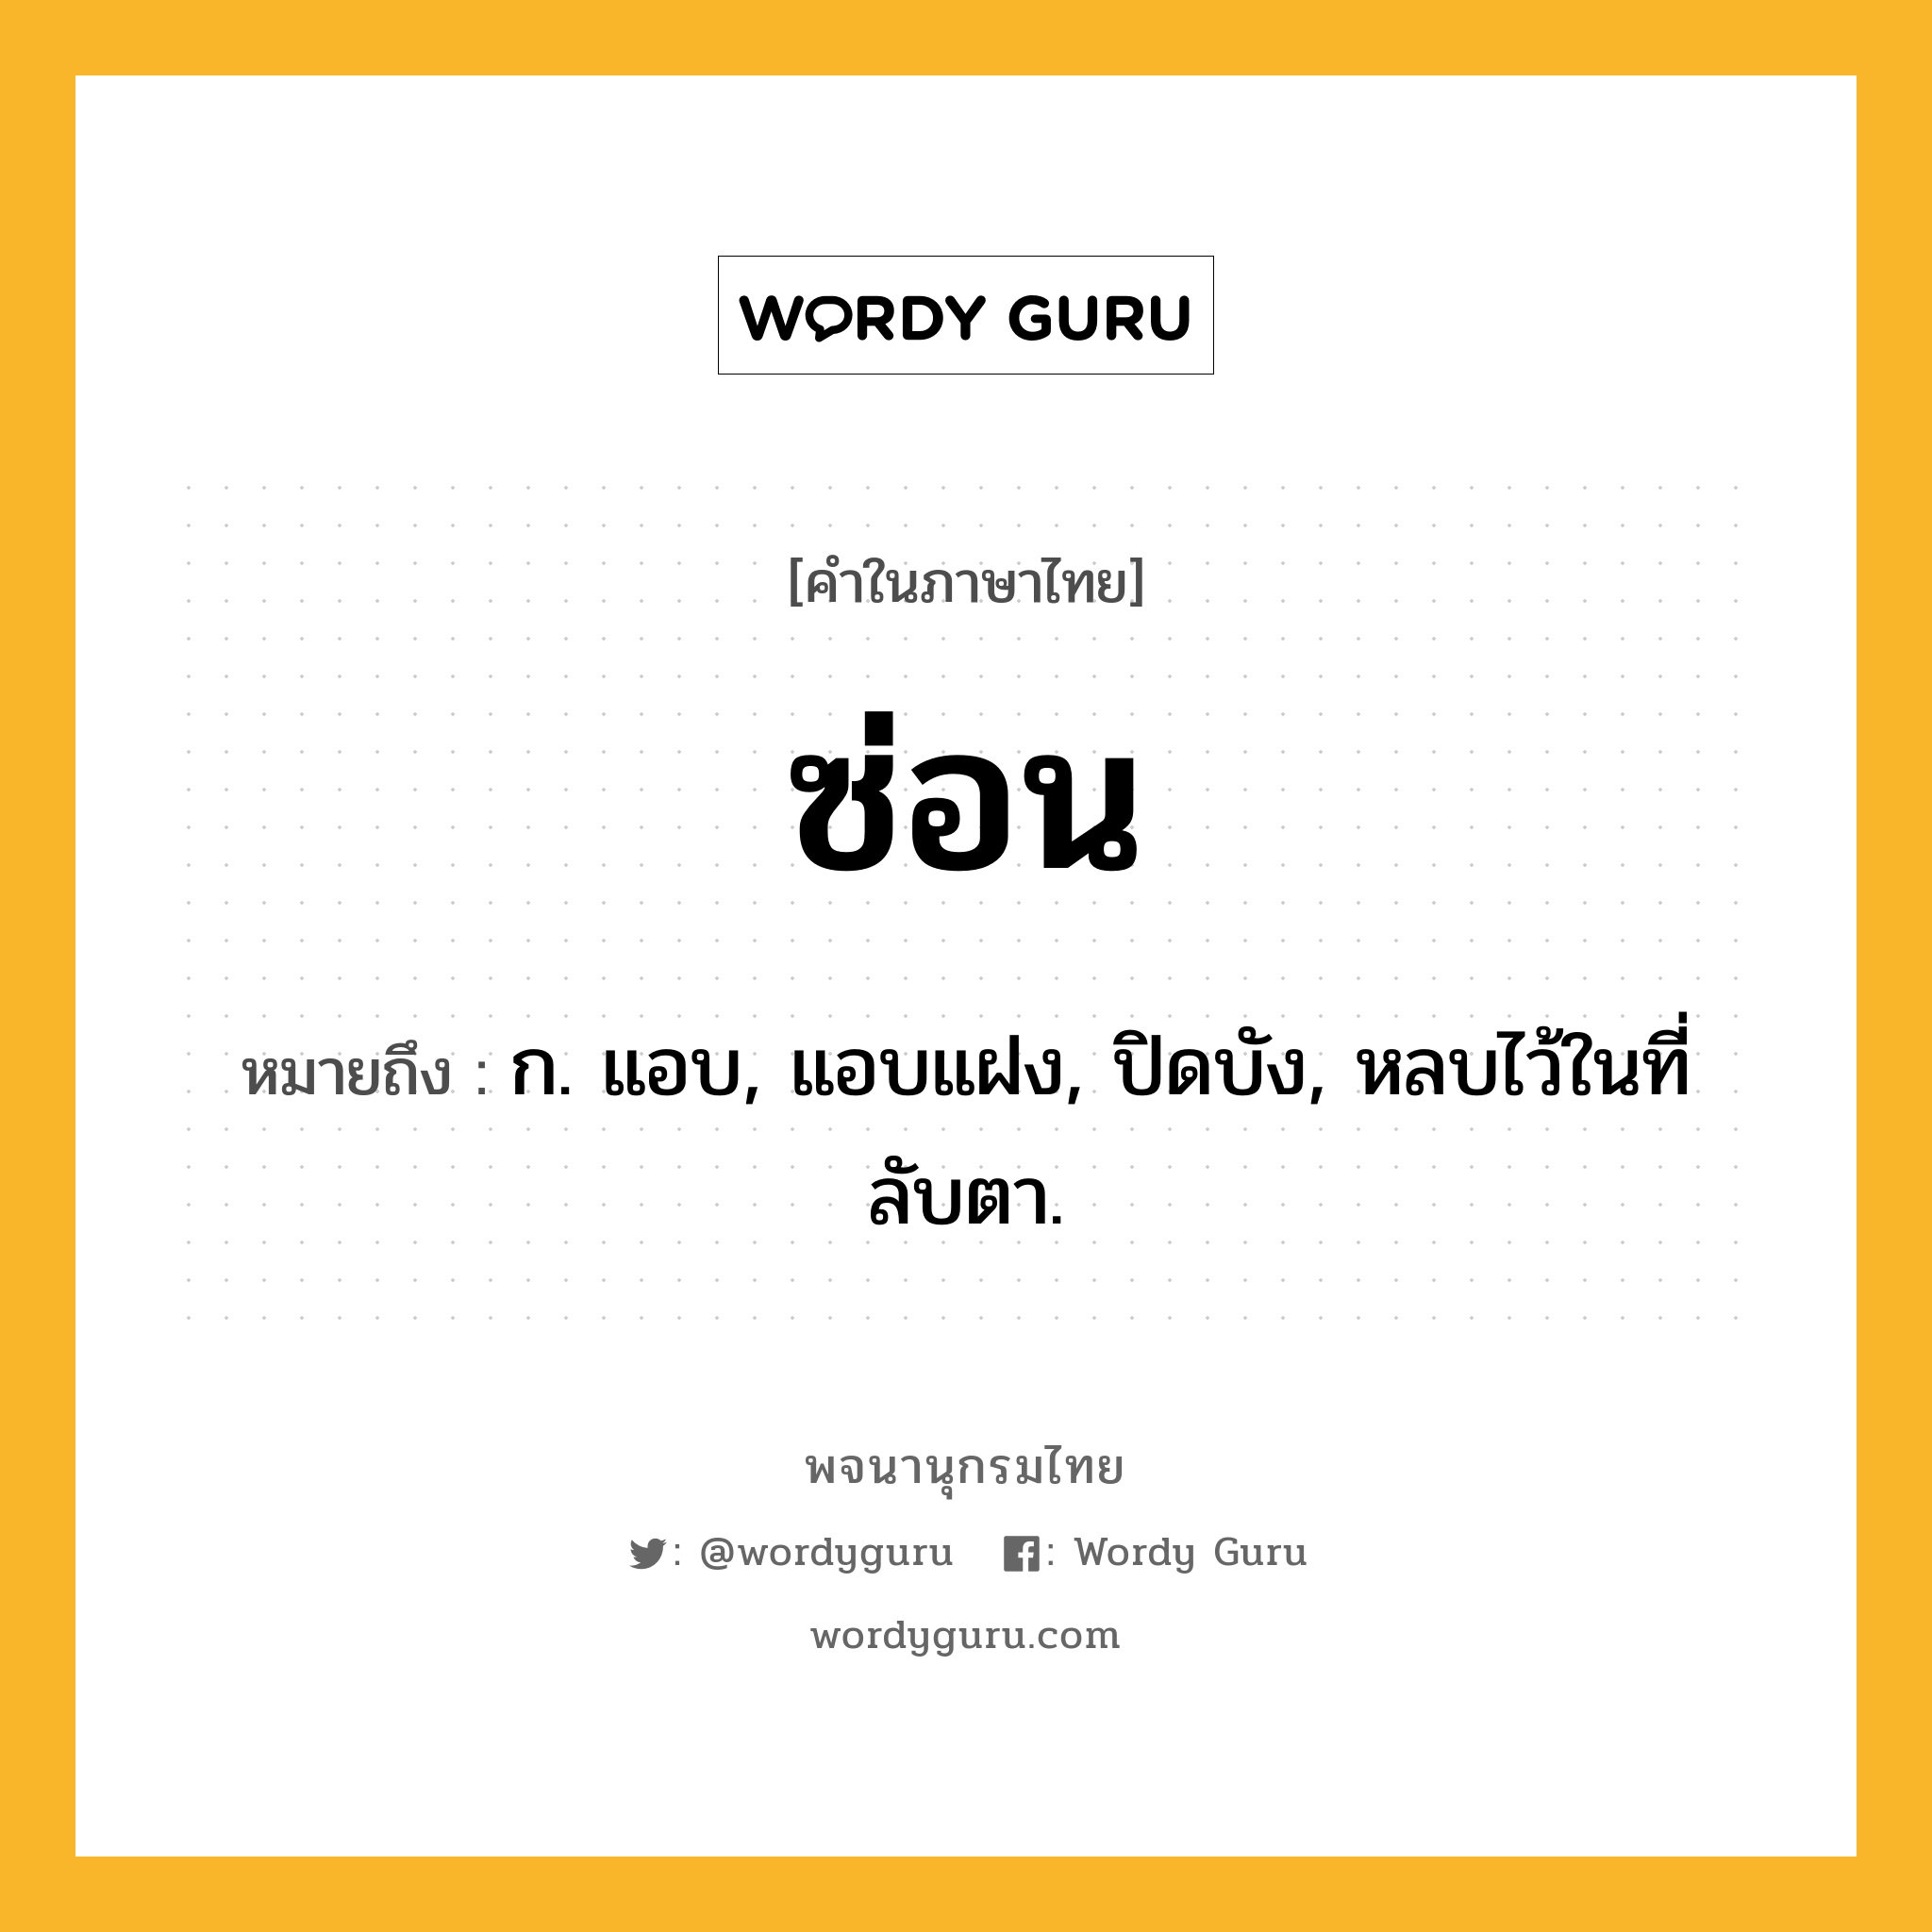 ซ่อน ความหมาย หมายถึงอะไร?, คำในภาษาไทย ซ่อน หมายถึง ก. แอบ, แอบแฝง, ปิดบัง, หลบไว้ในที่ลับตา.